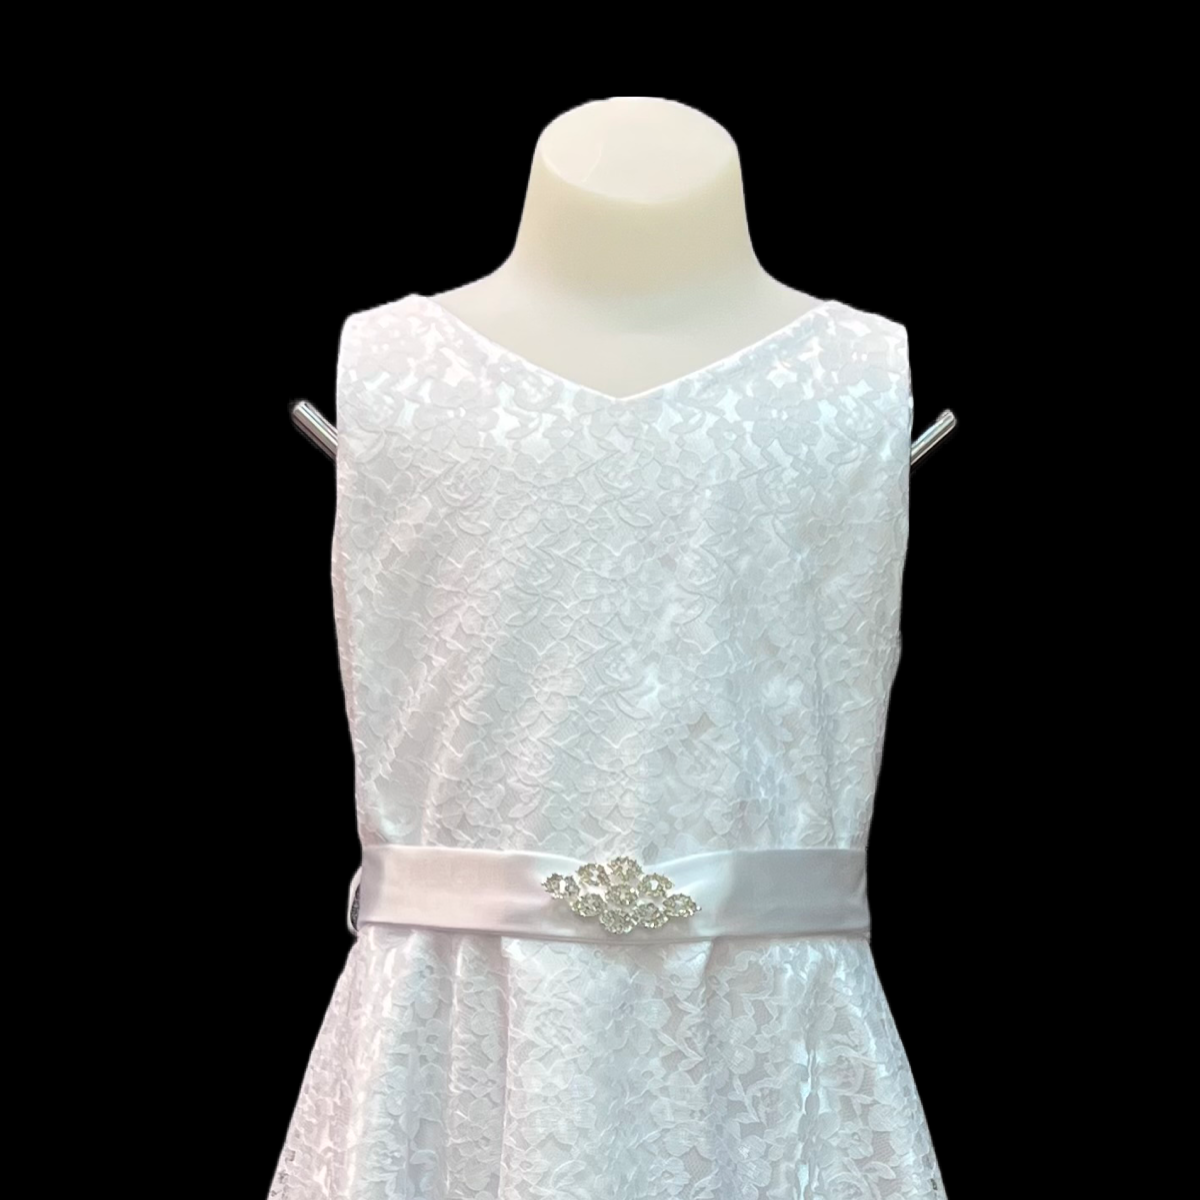 Pre-Teen Ivory Lace Dress w/ Rhinestone Brooch